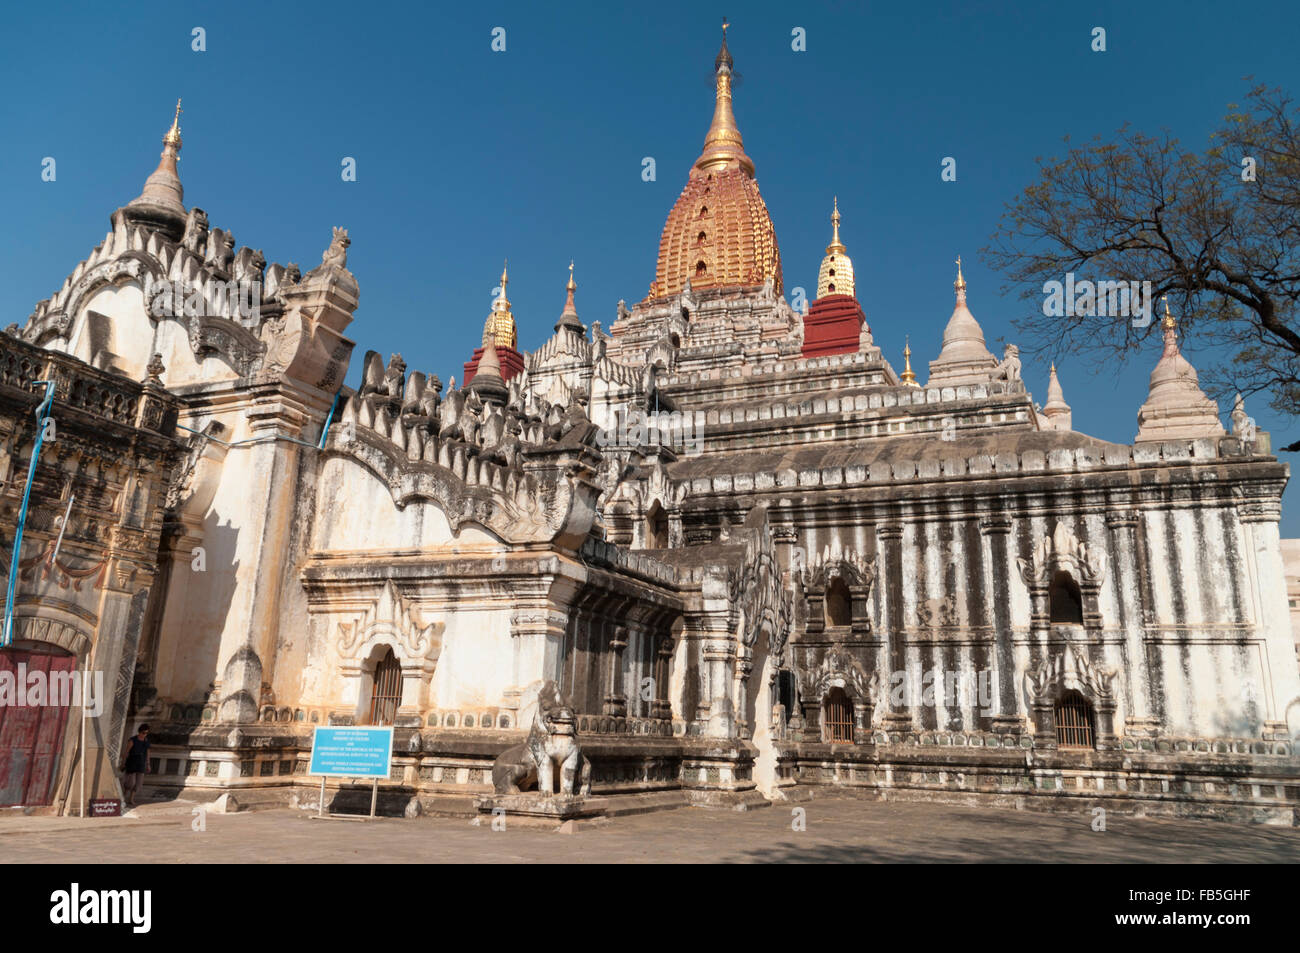 Ananda Phaya temple, Bagan, Mandalay Region, Myanmar. Stock Photo